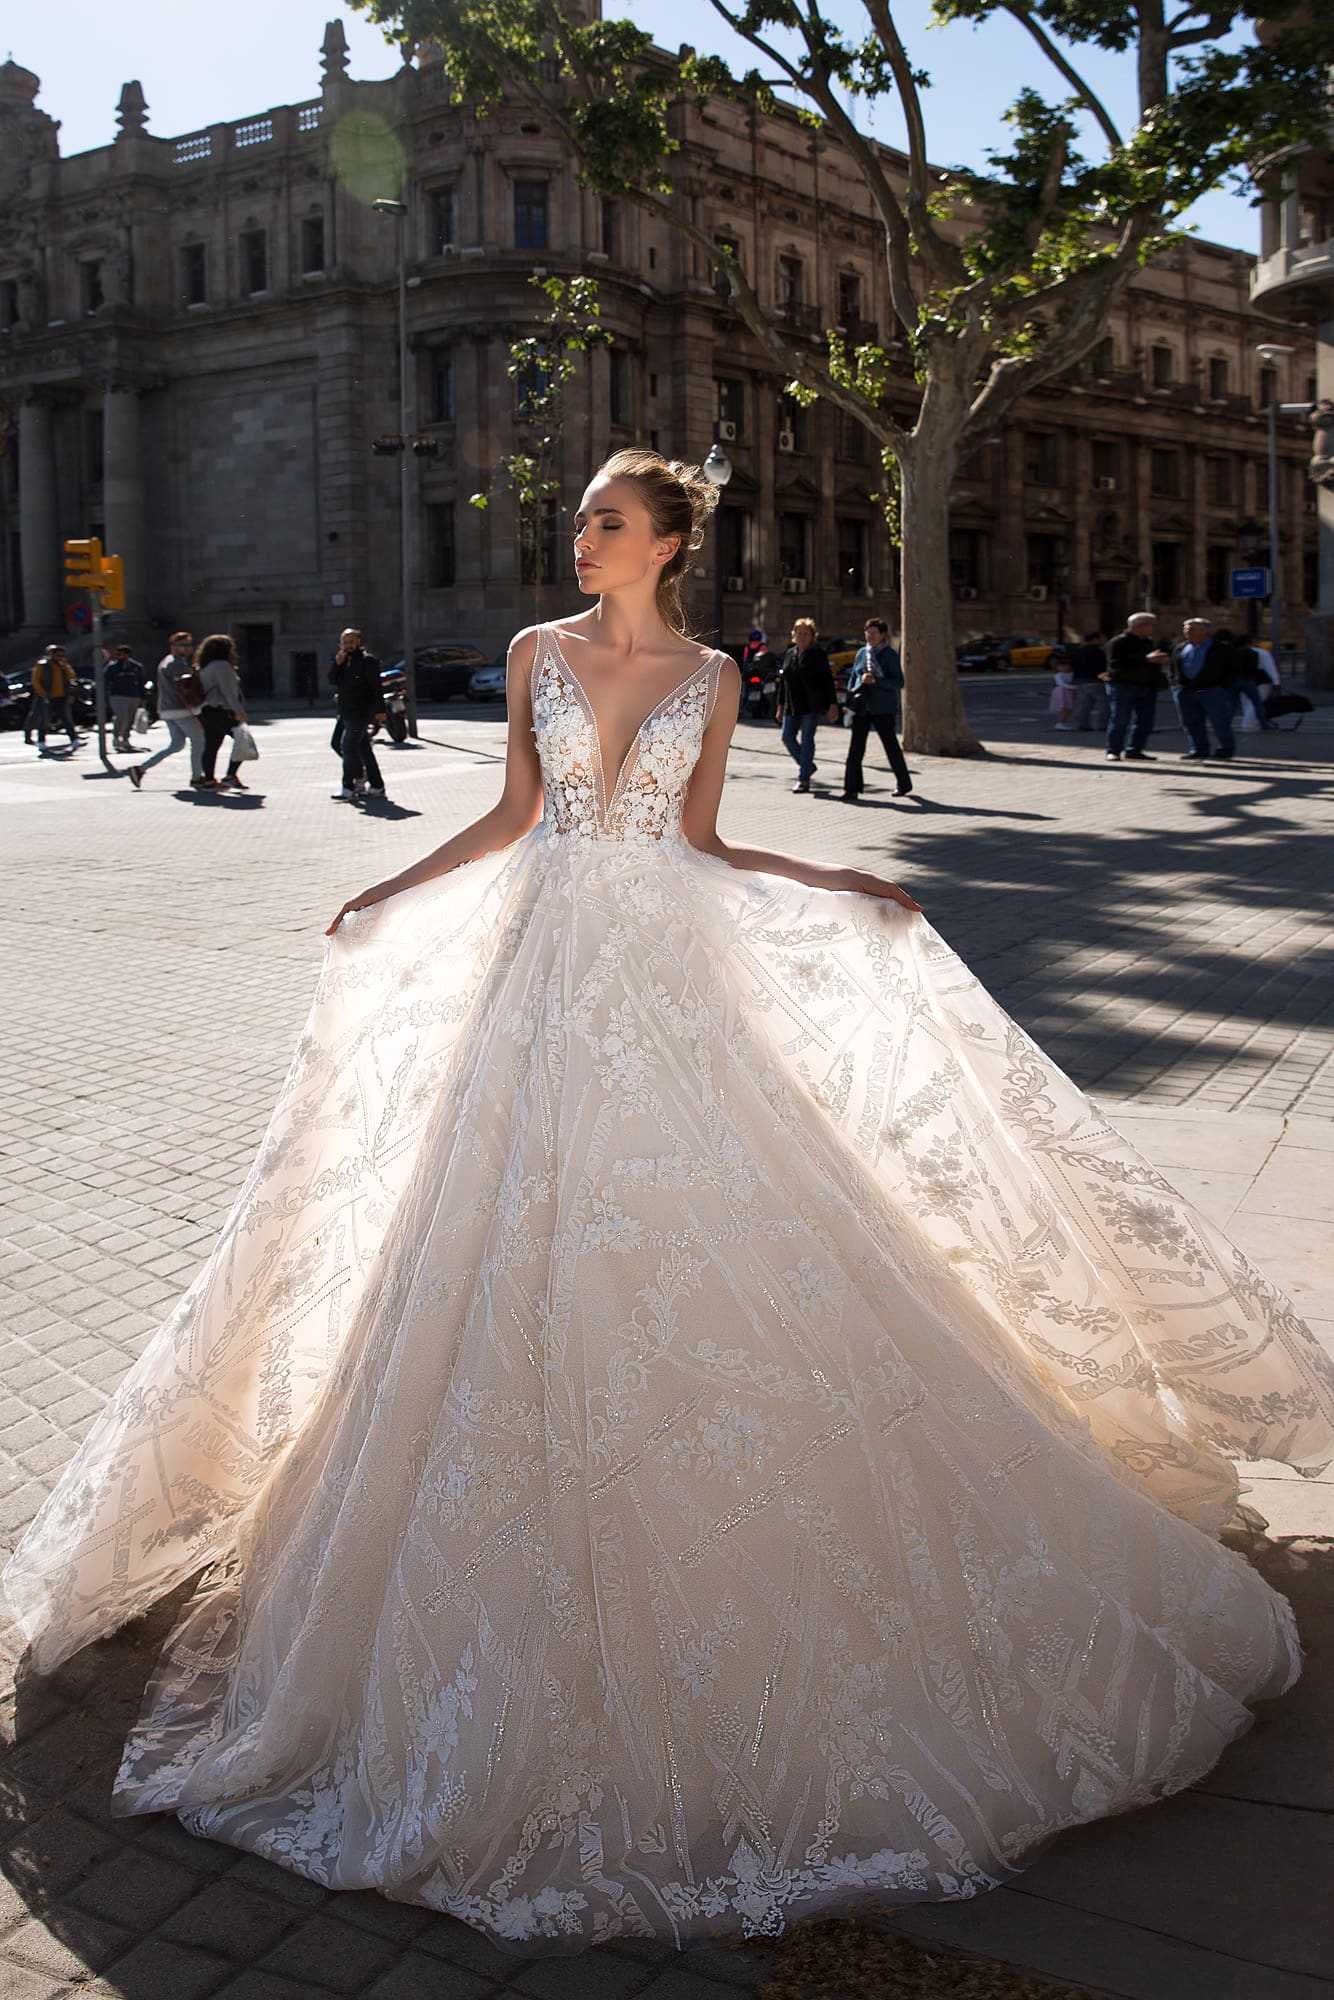 Лучшие в мире дизайнеры свадебных платьев – обзор брендов